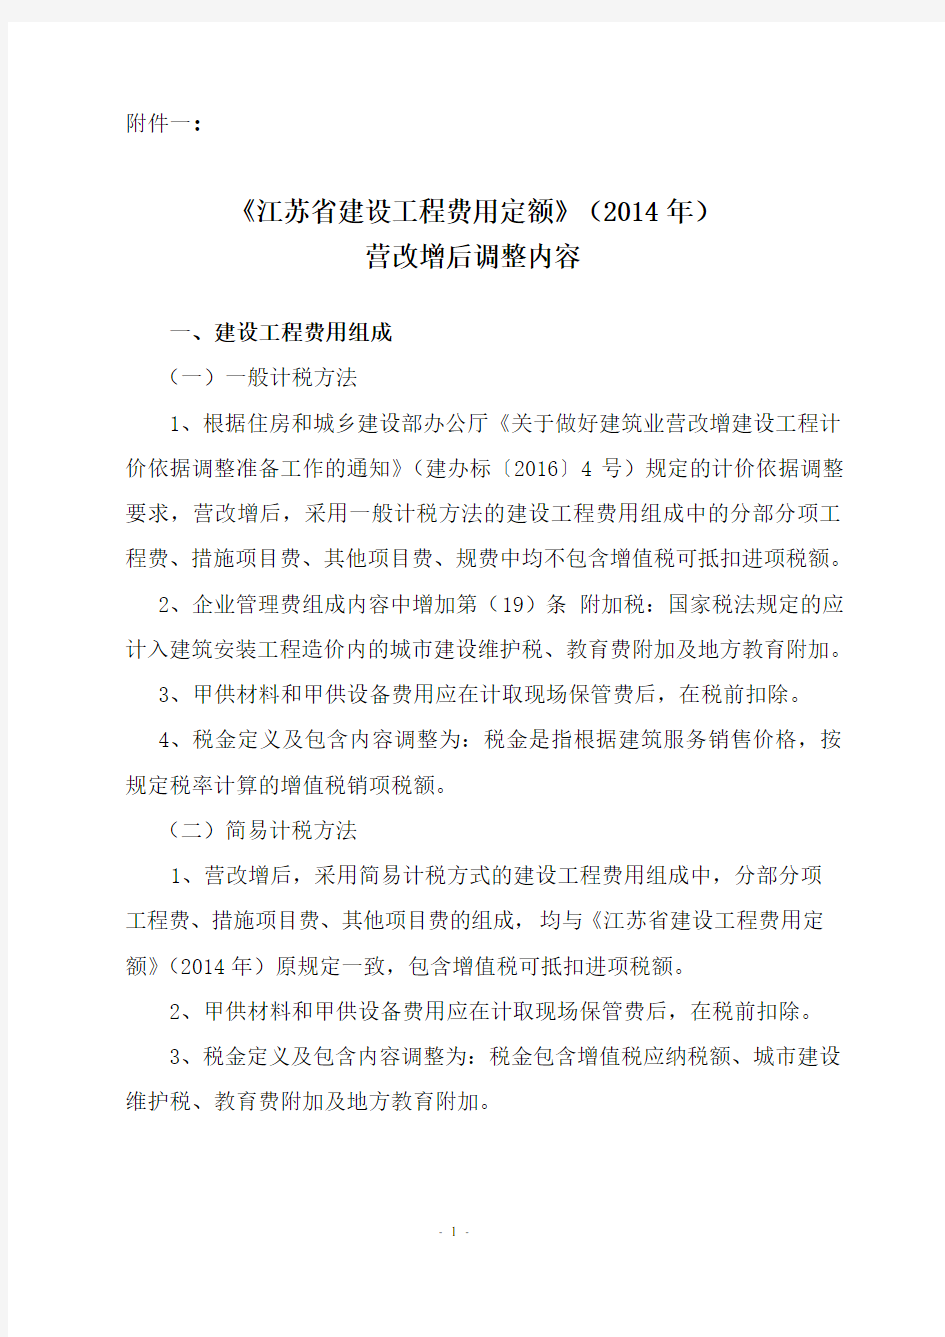 【2016】154号文附件一：《江苏省建设工程费用定额》(2014年)营改增后调整内容